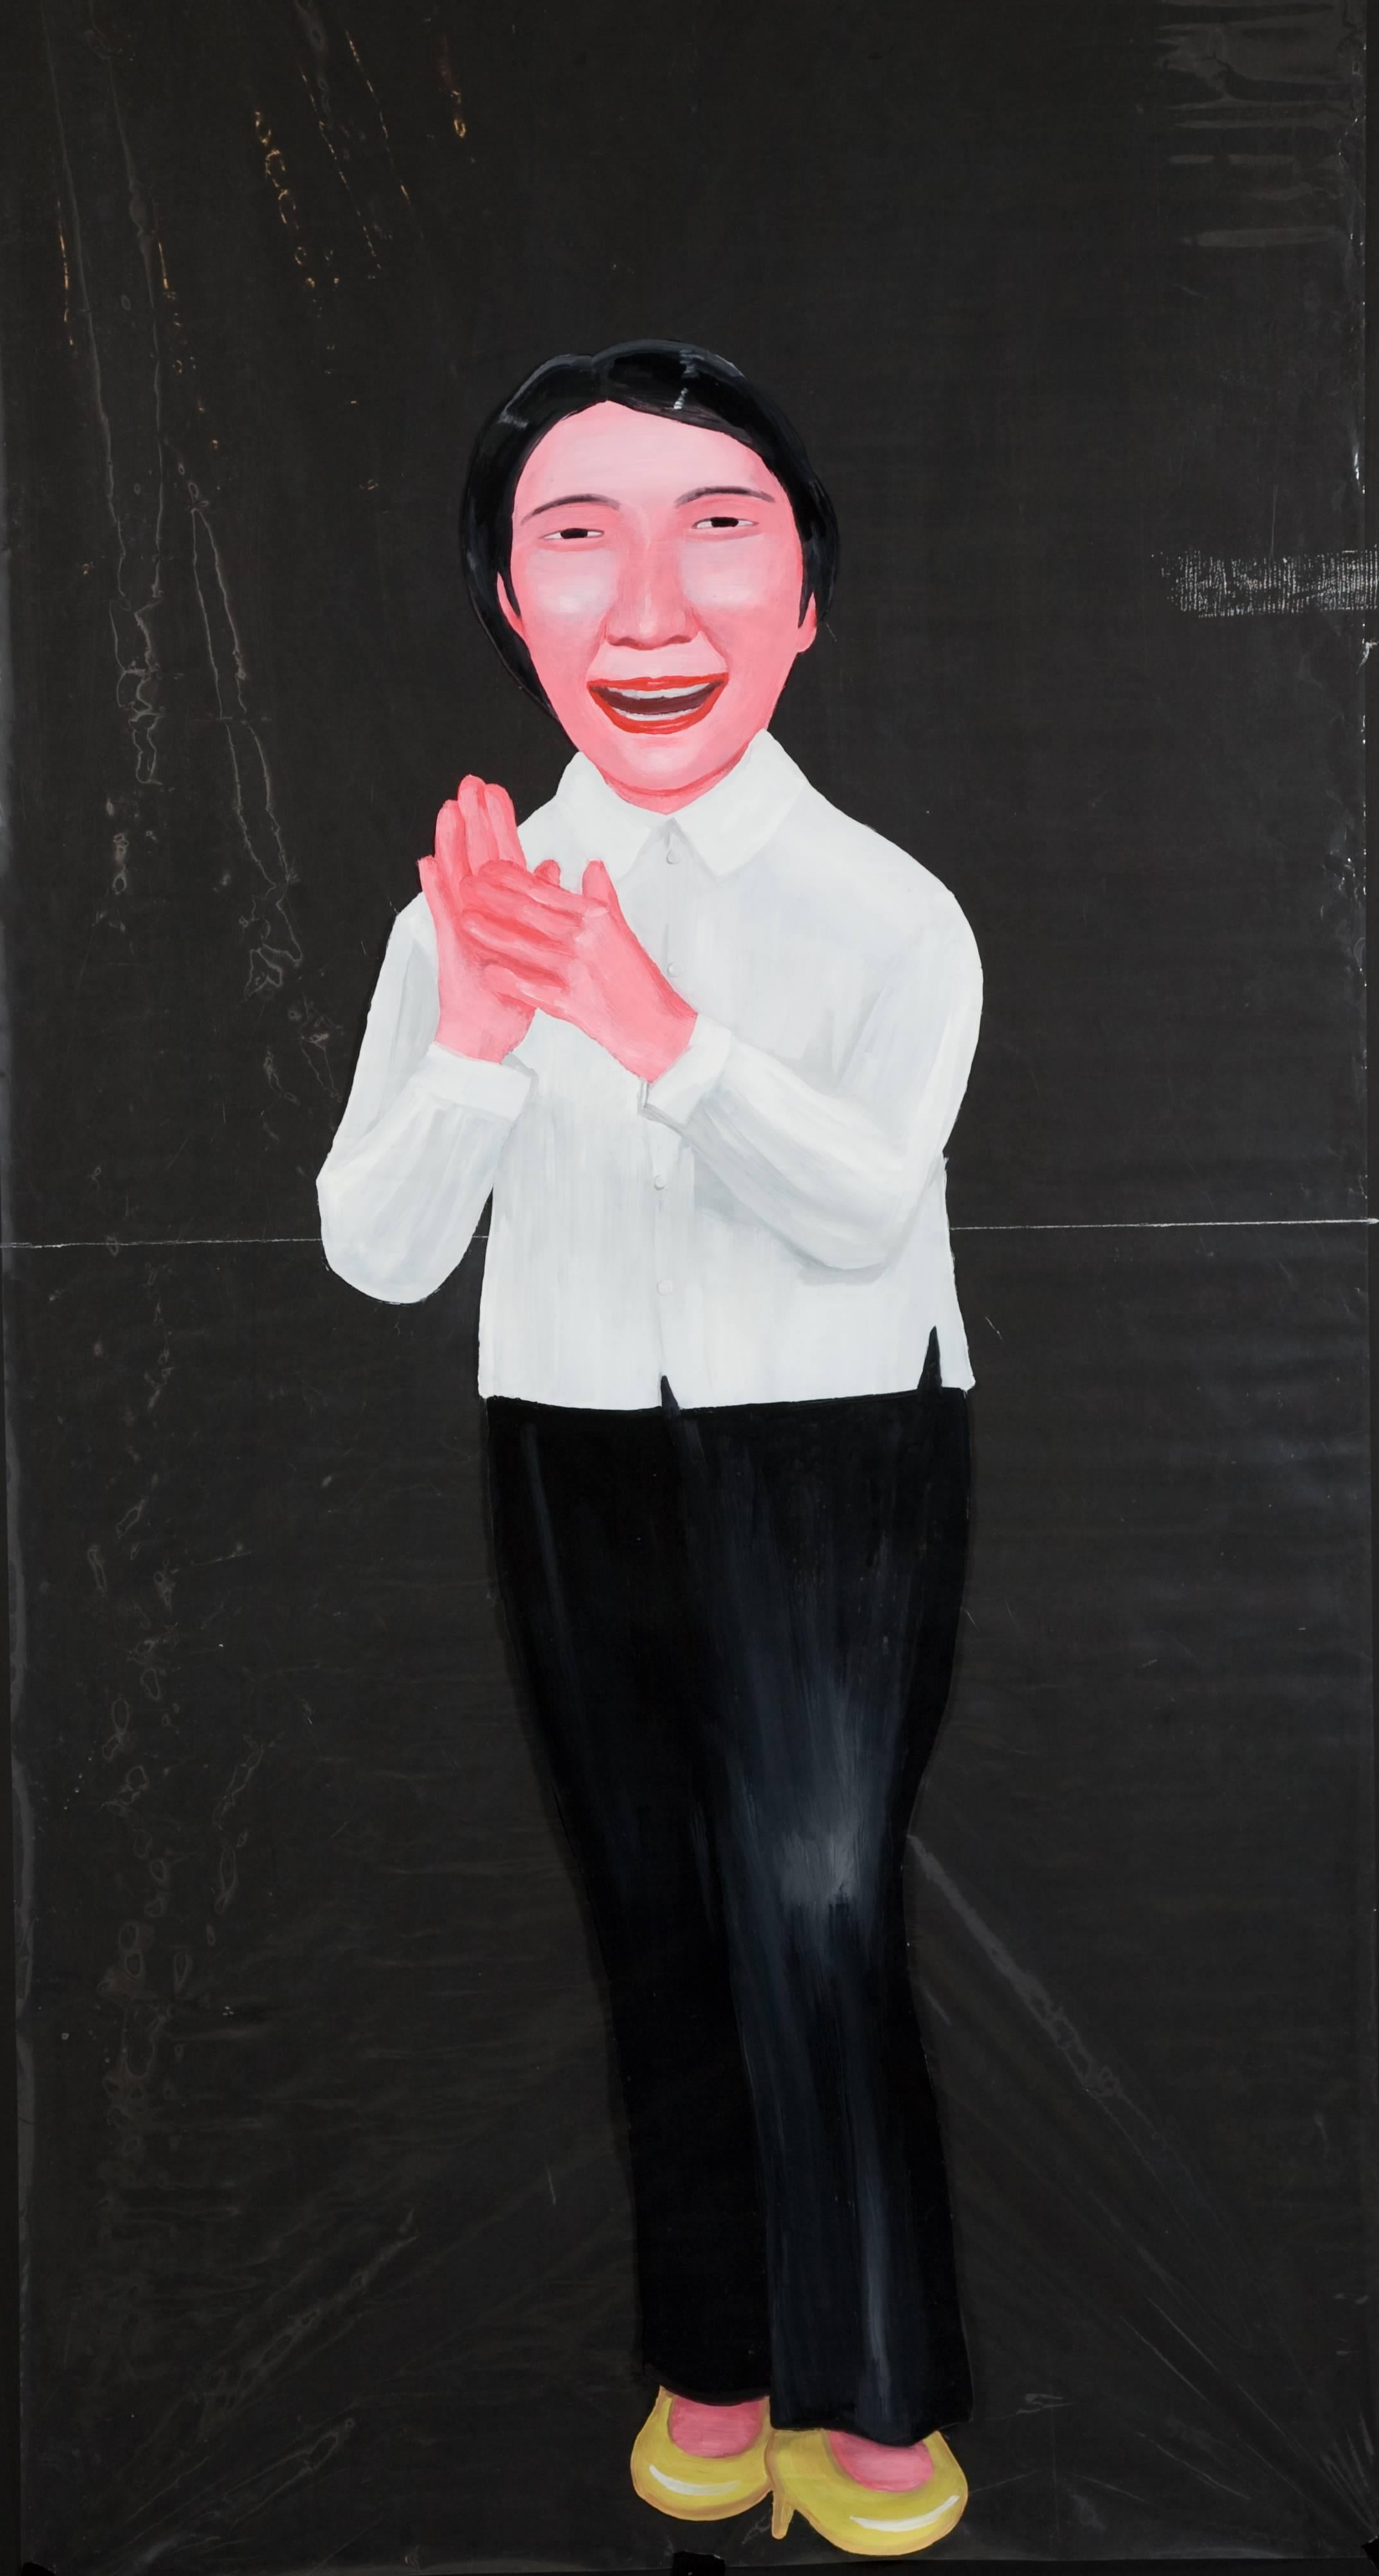 Tran Trong Vu peint un récit contemporain sur les changements qui ont eu lieu dans son pays natal, le Vietnam.  Il peint sur de grandes feuilles de plastique transparent ainsi que de l'huile sur toile.